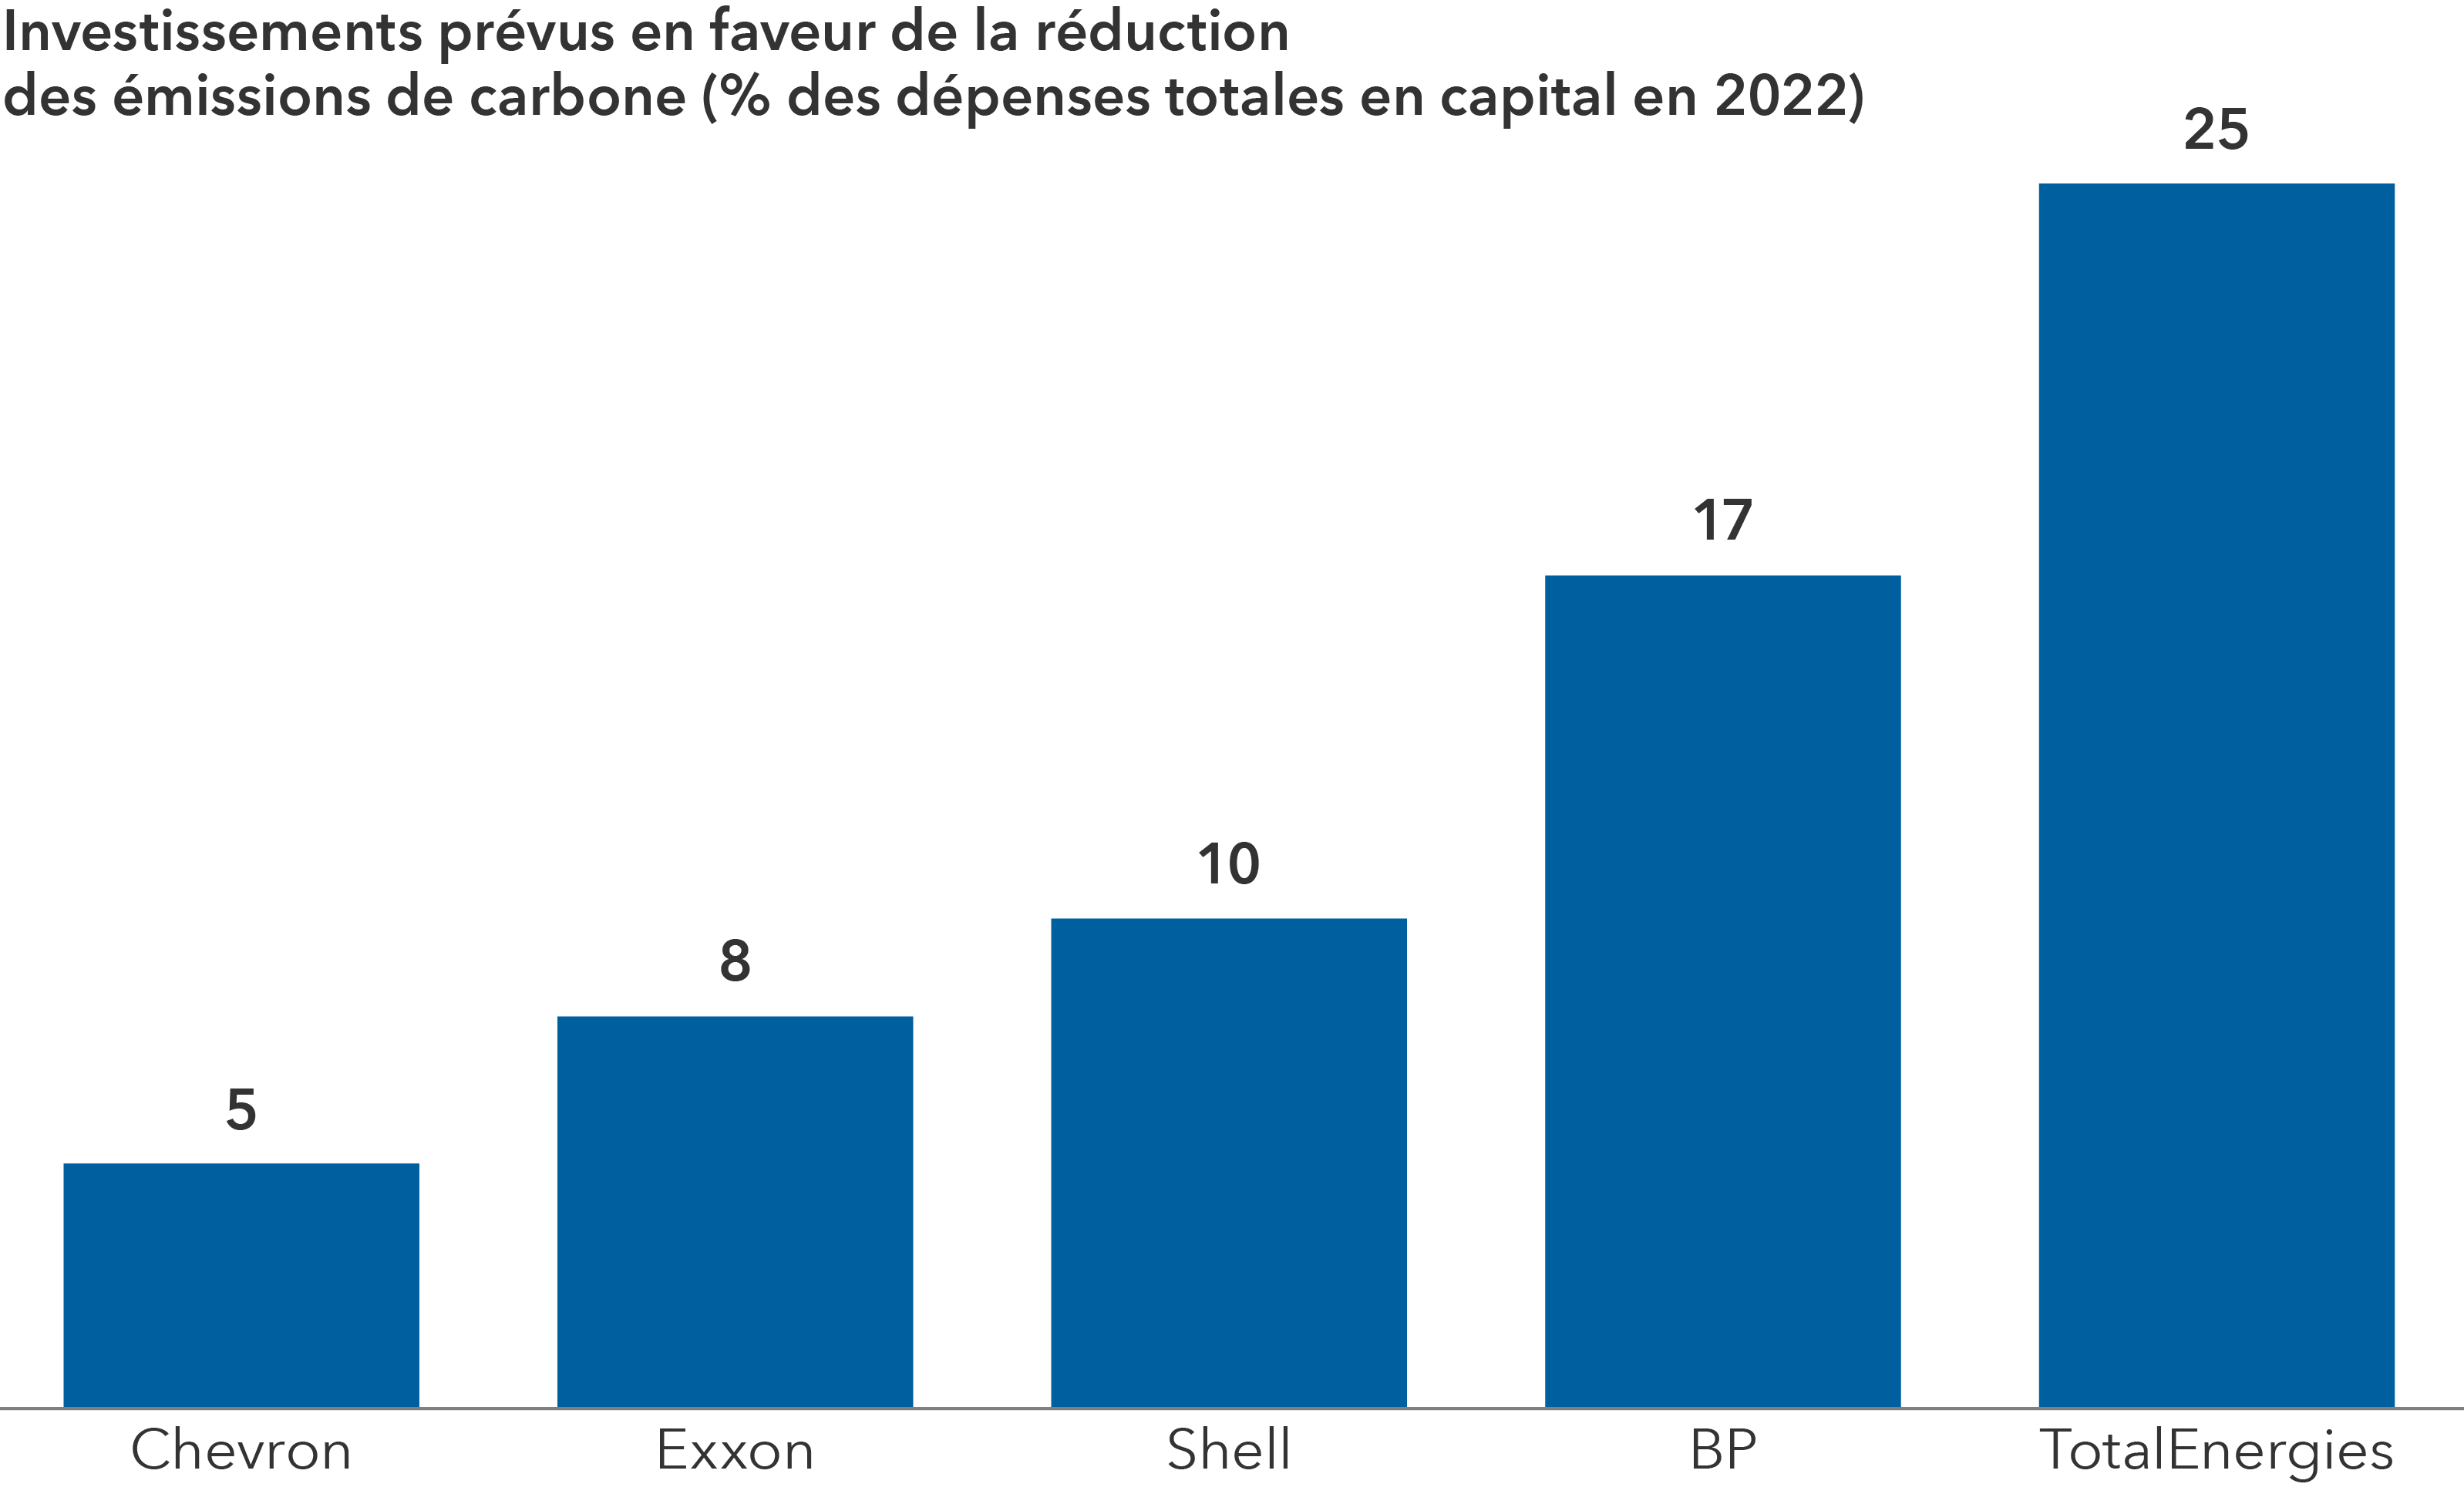 Ce graphique présente le montant des dépenses en capital que les grandes entreprises pétrolières et gazières européennes et américaines consacreront aux investissements à faibles émissions de carbone en 2022, selon une étude d’InfluenceMap. Les grandes entreprises pétrolières et gazières européennes ont consacré respectivement les montants suivants aux investissements à faibles émissions de carbone : TotalEnergies, 25 %; BP, 17 %; Shell, 10 %. Les grandes entreprises pétrolières et gazières américaines ont consacré les montants suivants : ExxonMobil, 8 %; Chevron, 5 %.